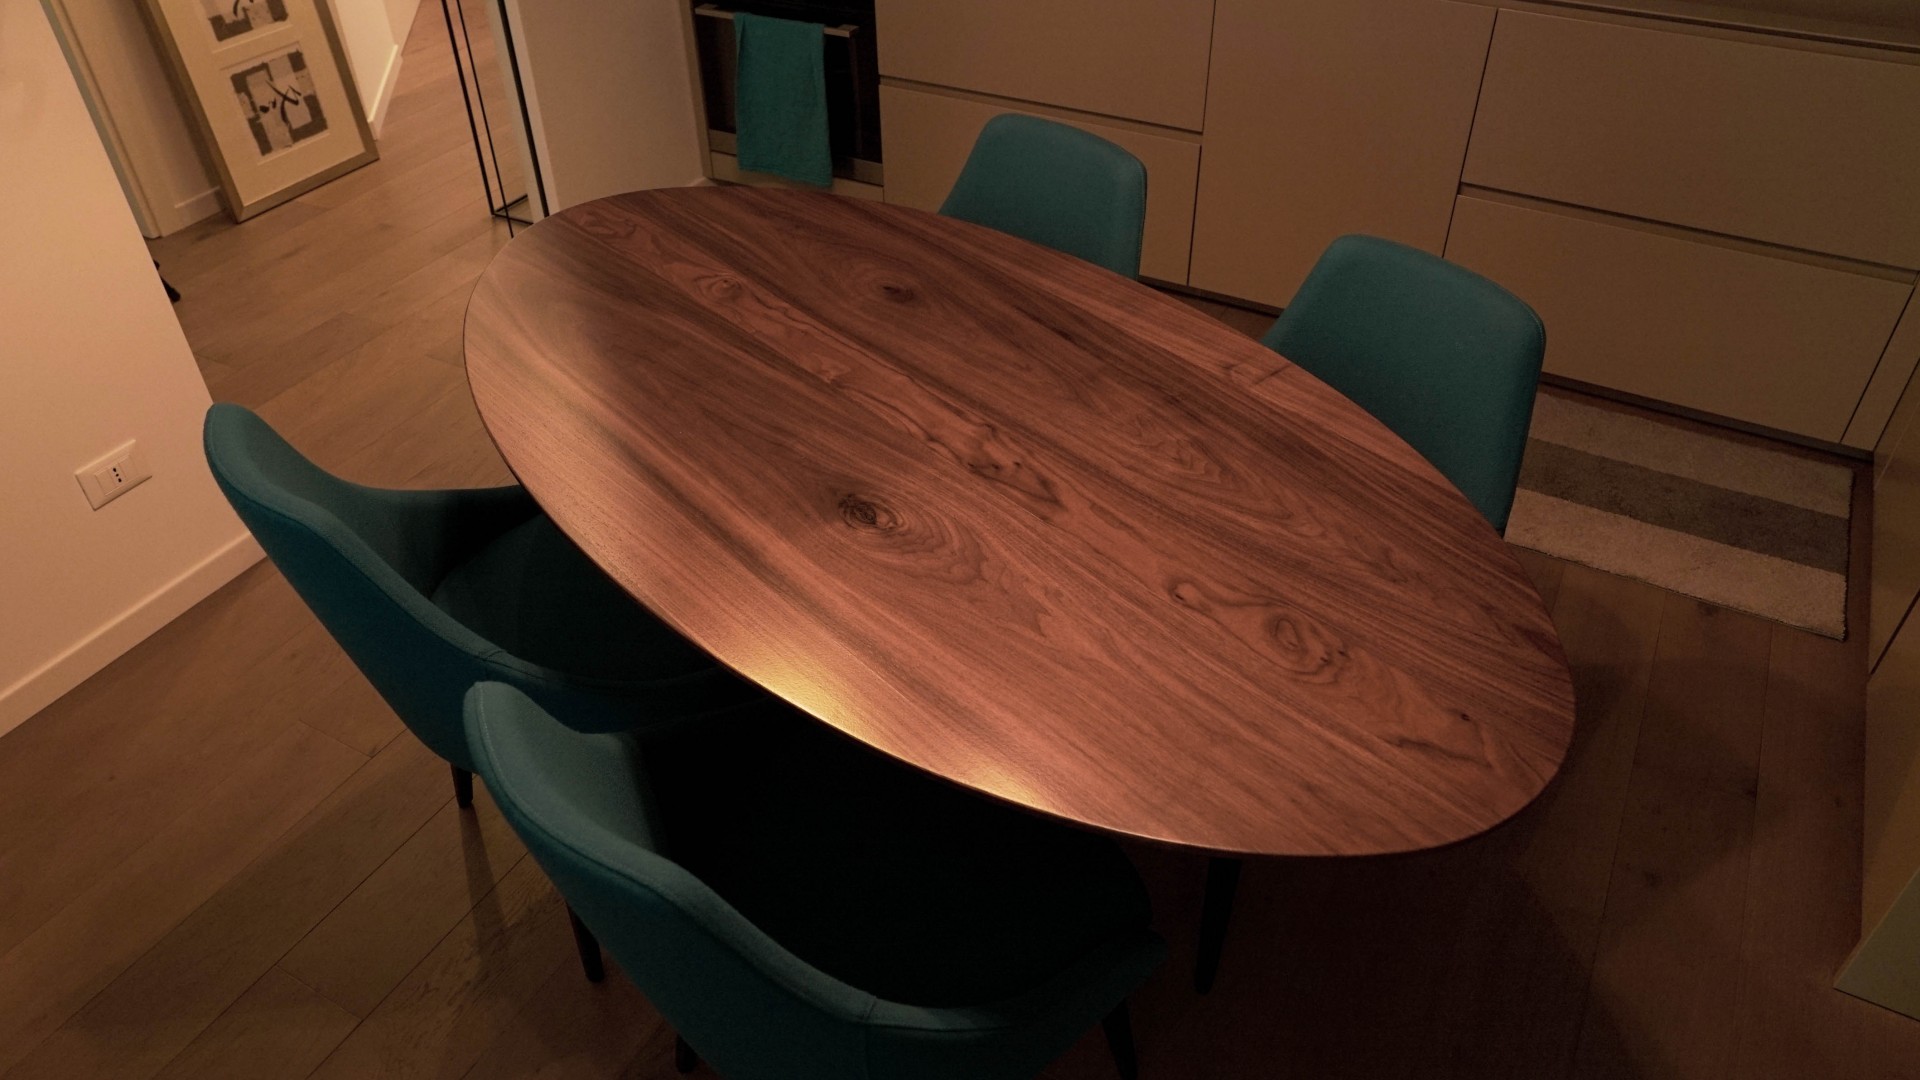 Arredamento su misura realizzato da Profili - Falegnameria & Design. Tavolo in legno massello noce canaletto per Living moderno. Tavolo da pranzo e per soggiorno.